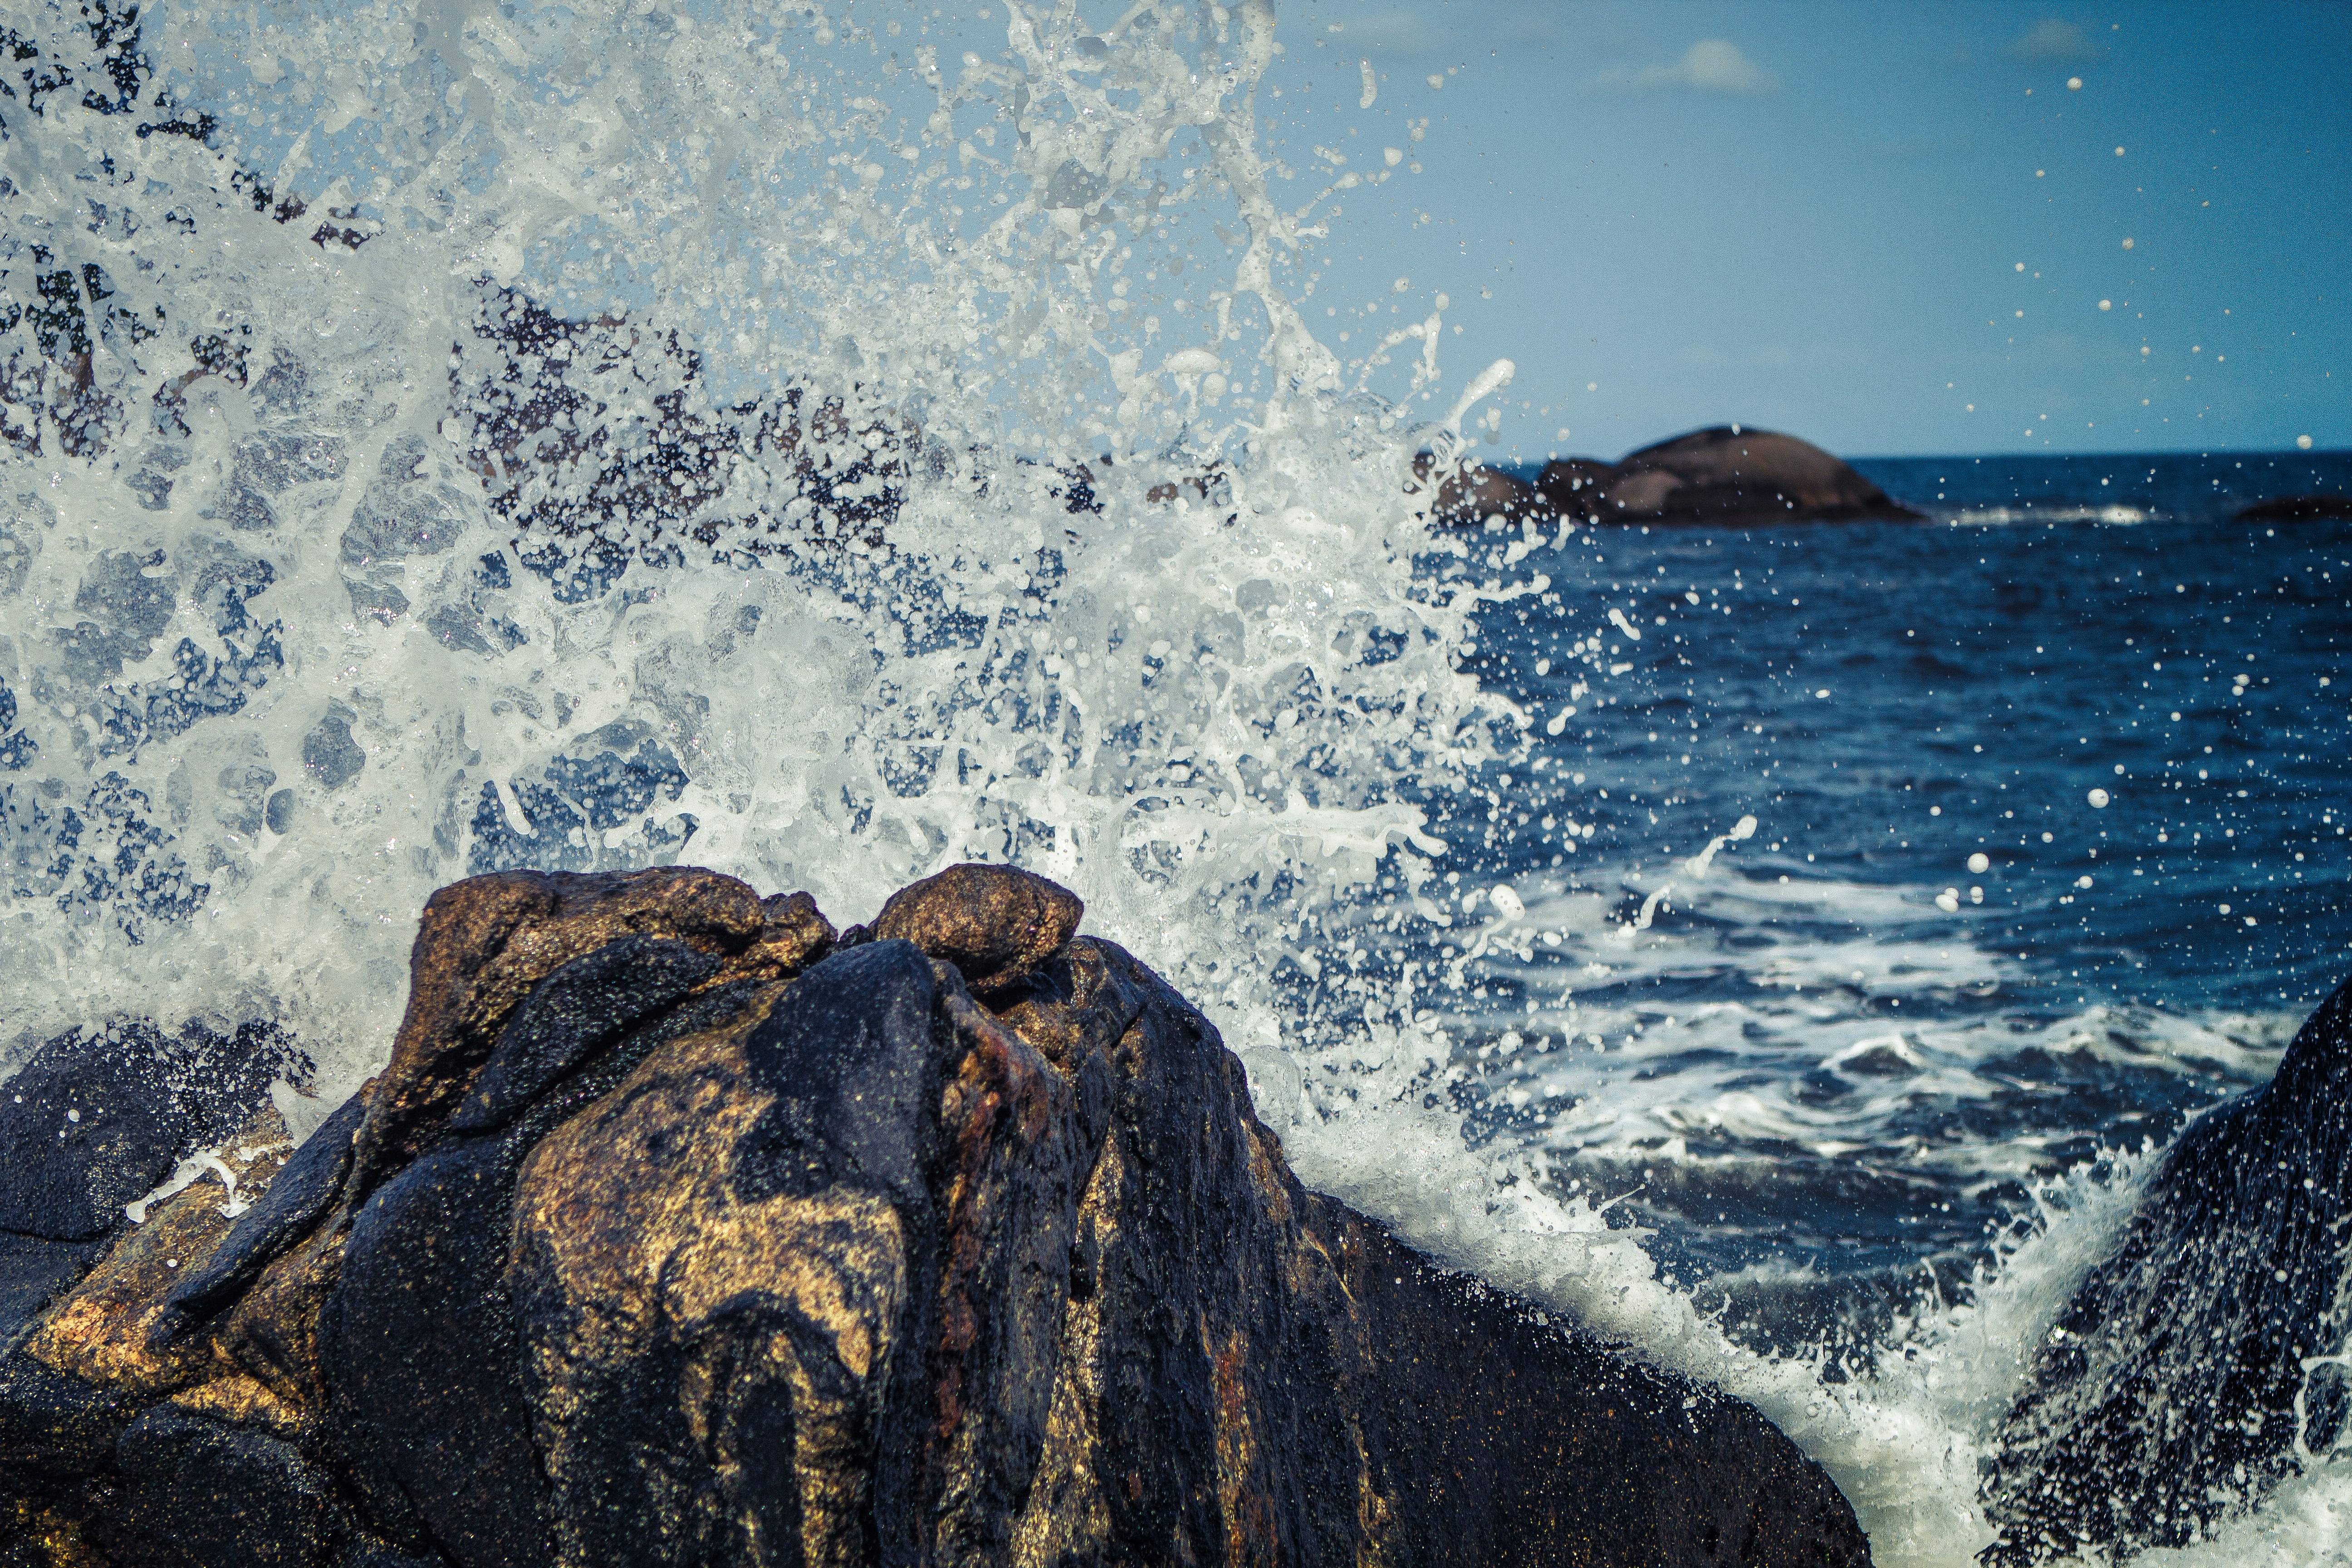 seawater splashing rock boulders at daytime